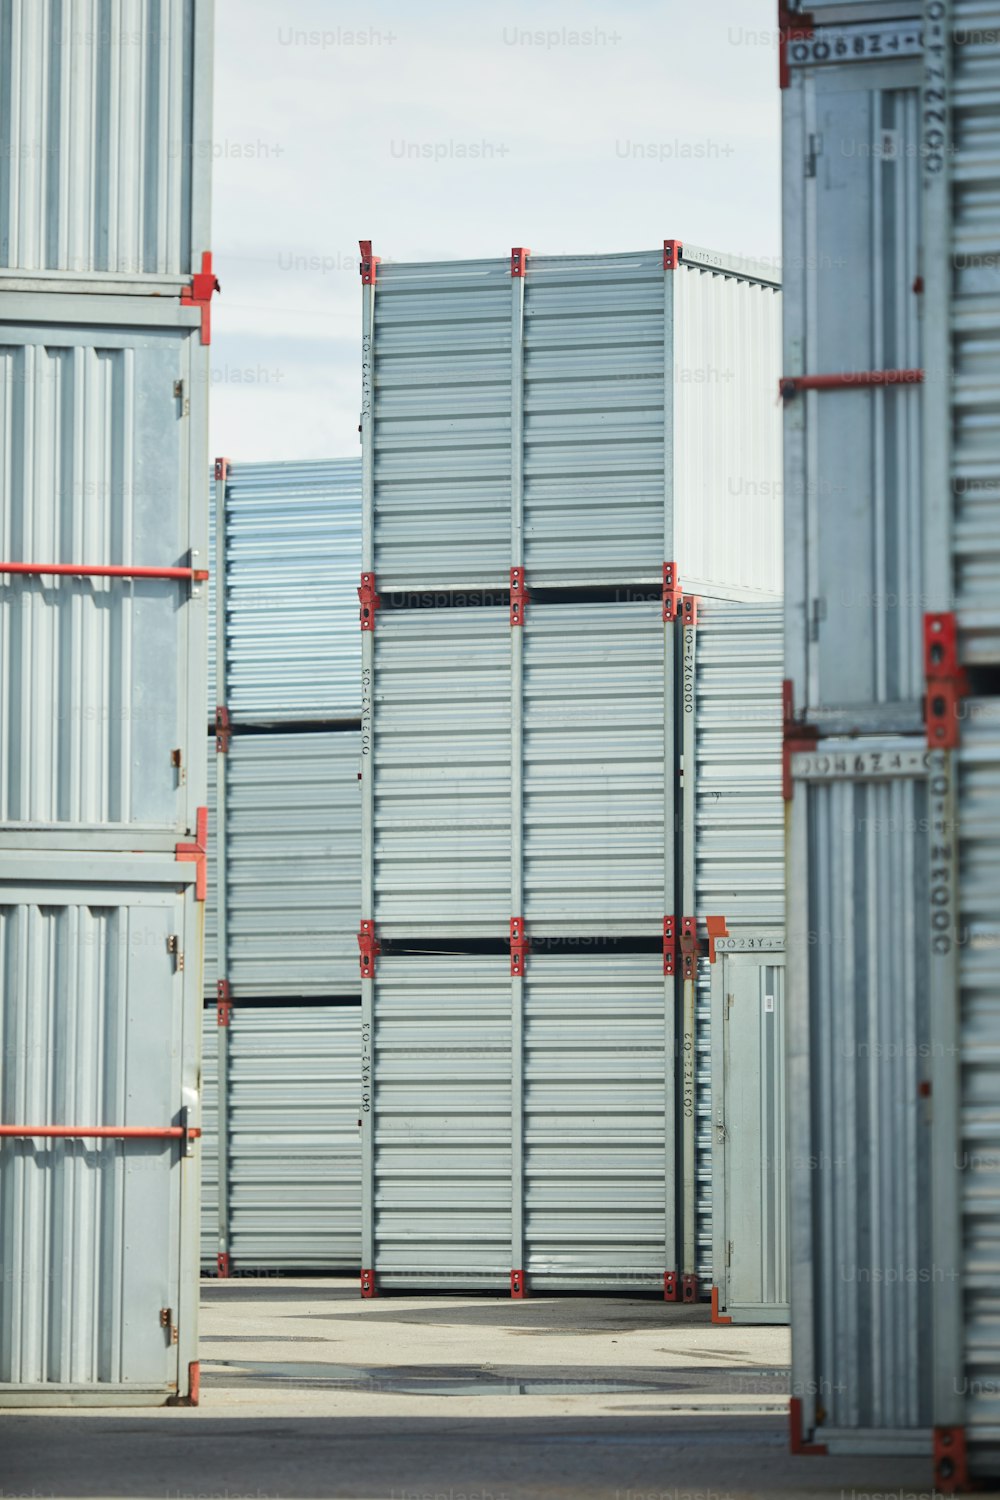 Pilhas de novos contêineres de armazenamento que podem ser usados para armazenar carga e outras coisas ou suprimentos